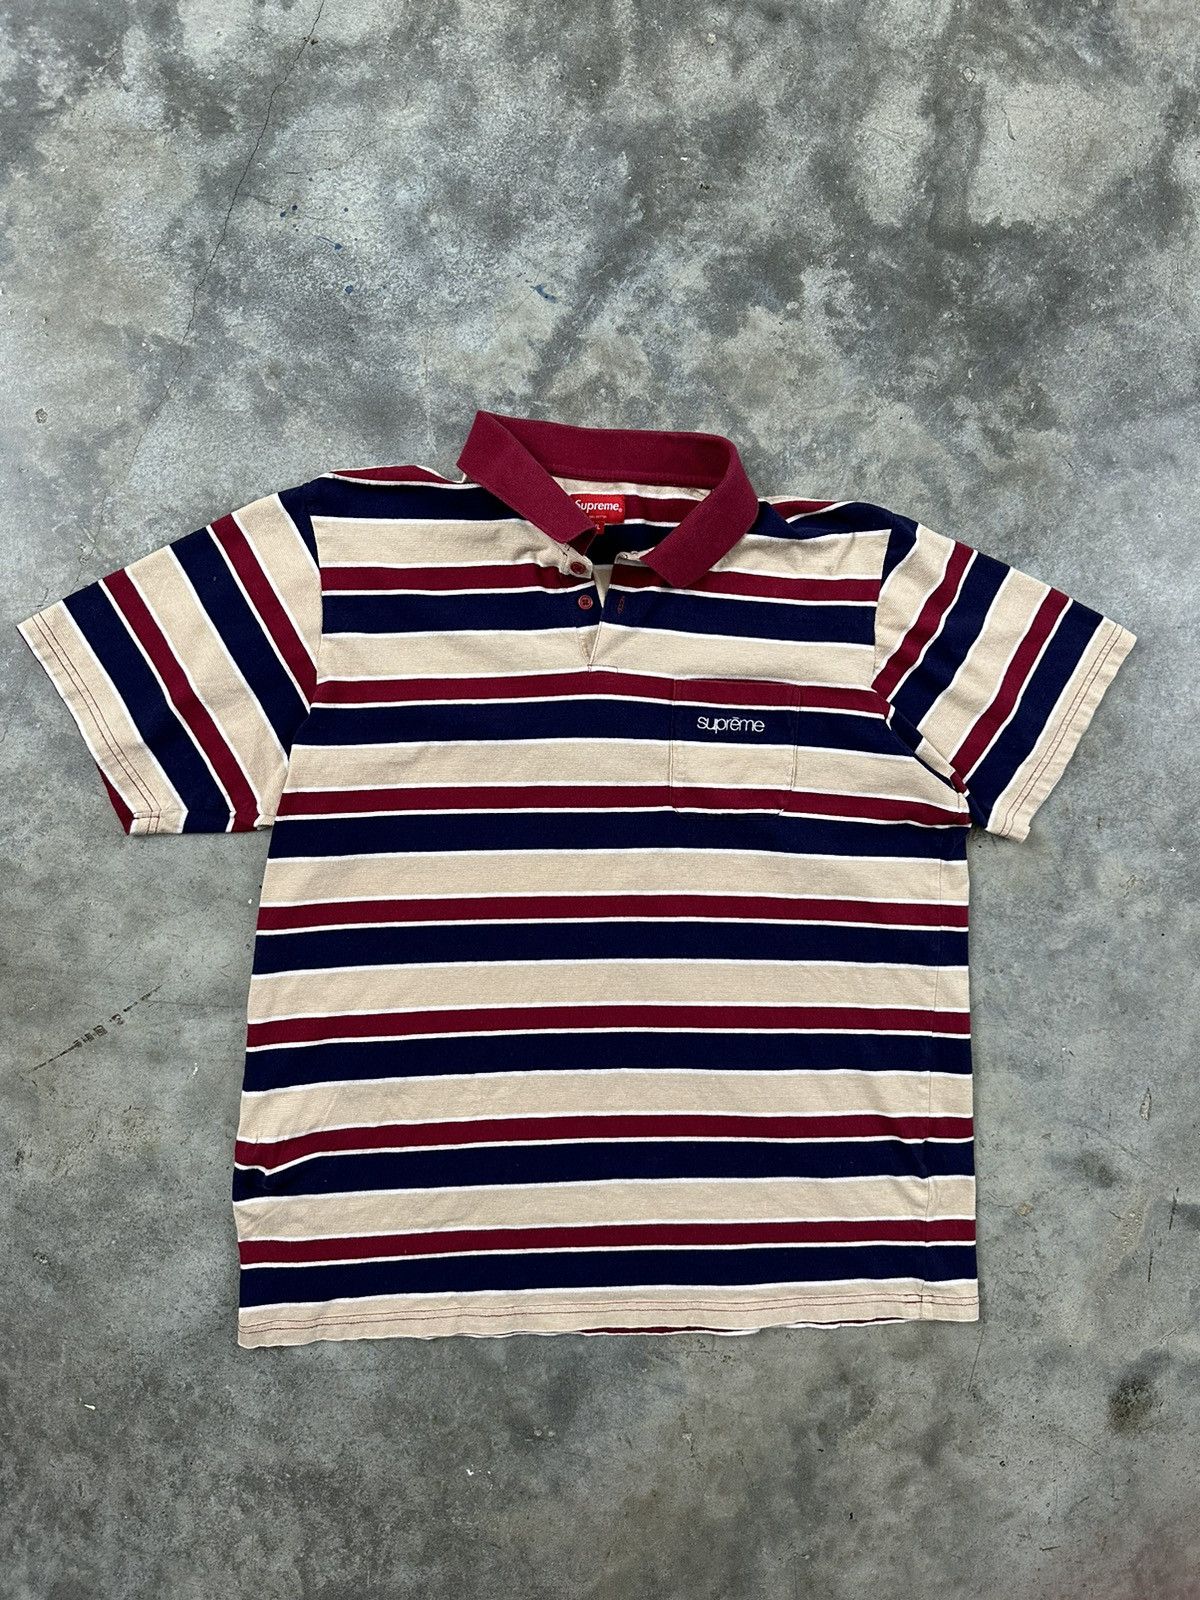 Supreme Supreme Striped Classic Logo Stripe Polo Shirt SS19 Sz. XL | Grailed